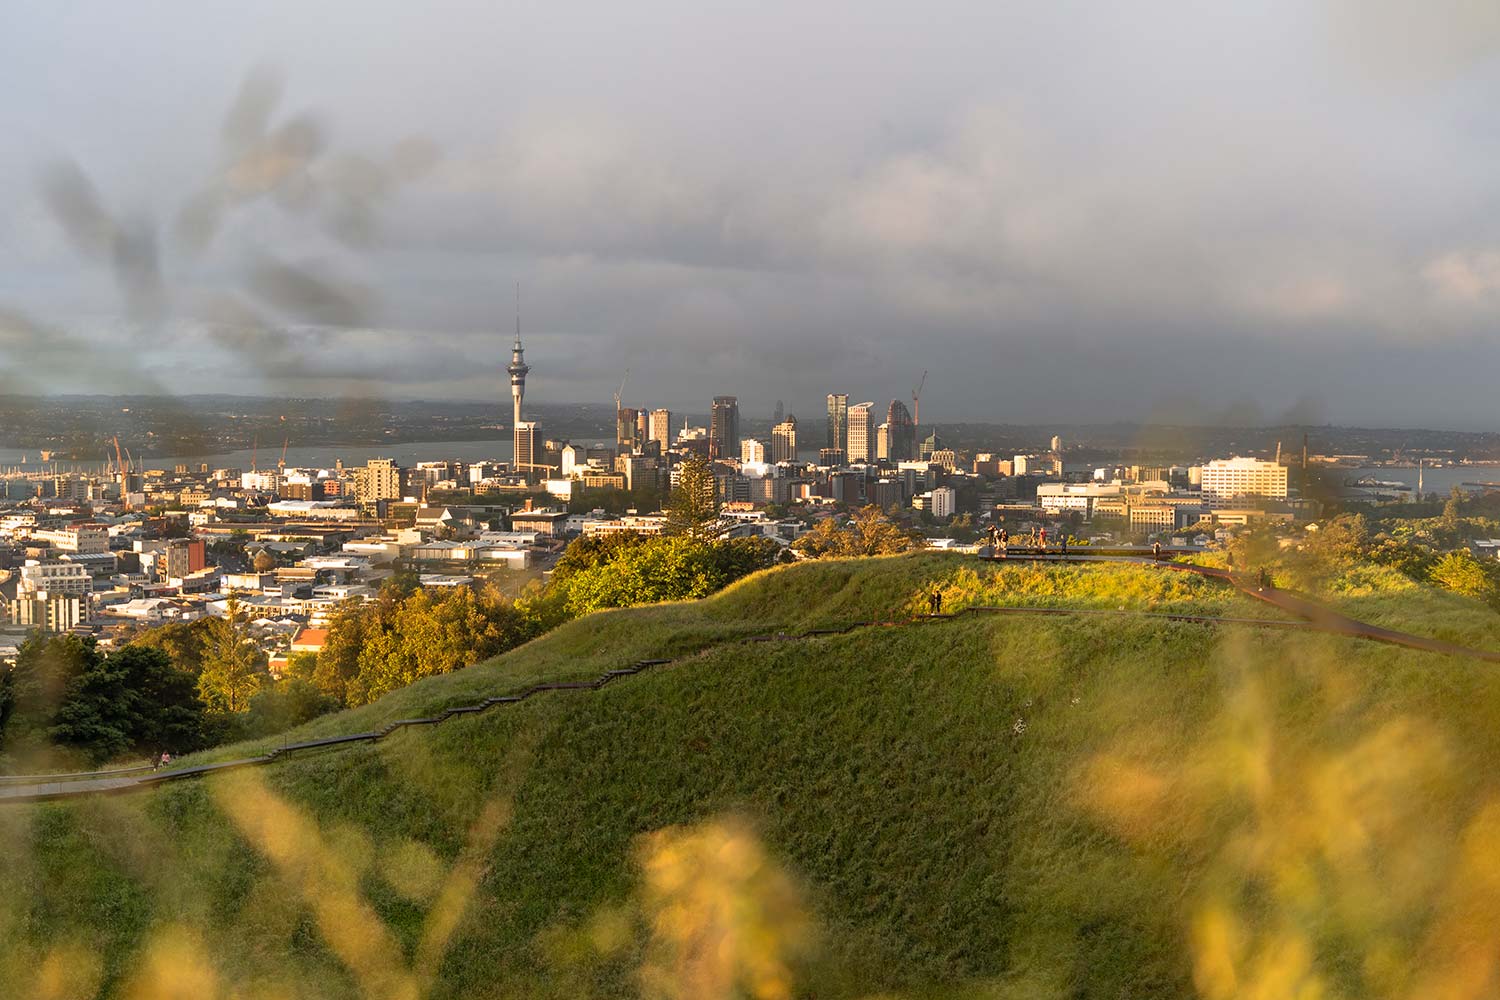 Vue depuis mont Eden ou Maungawhau, Auckland, Nouvelle-Zélande / View from Mount Eden or Maungawhau, Auckland, New Zealand, NZ